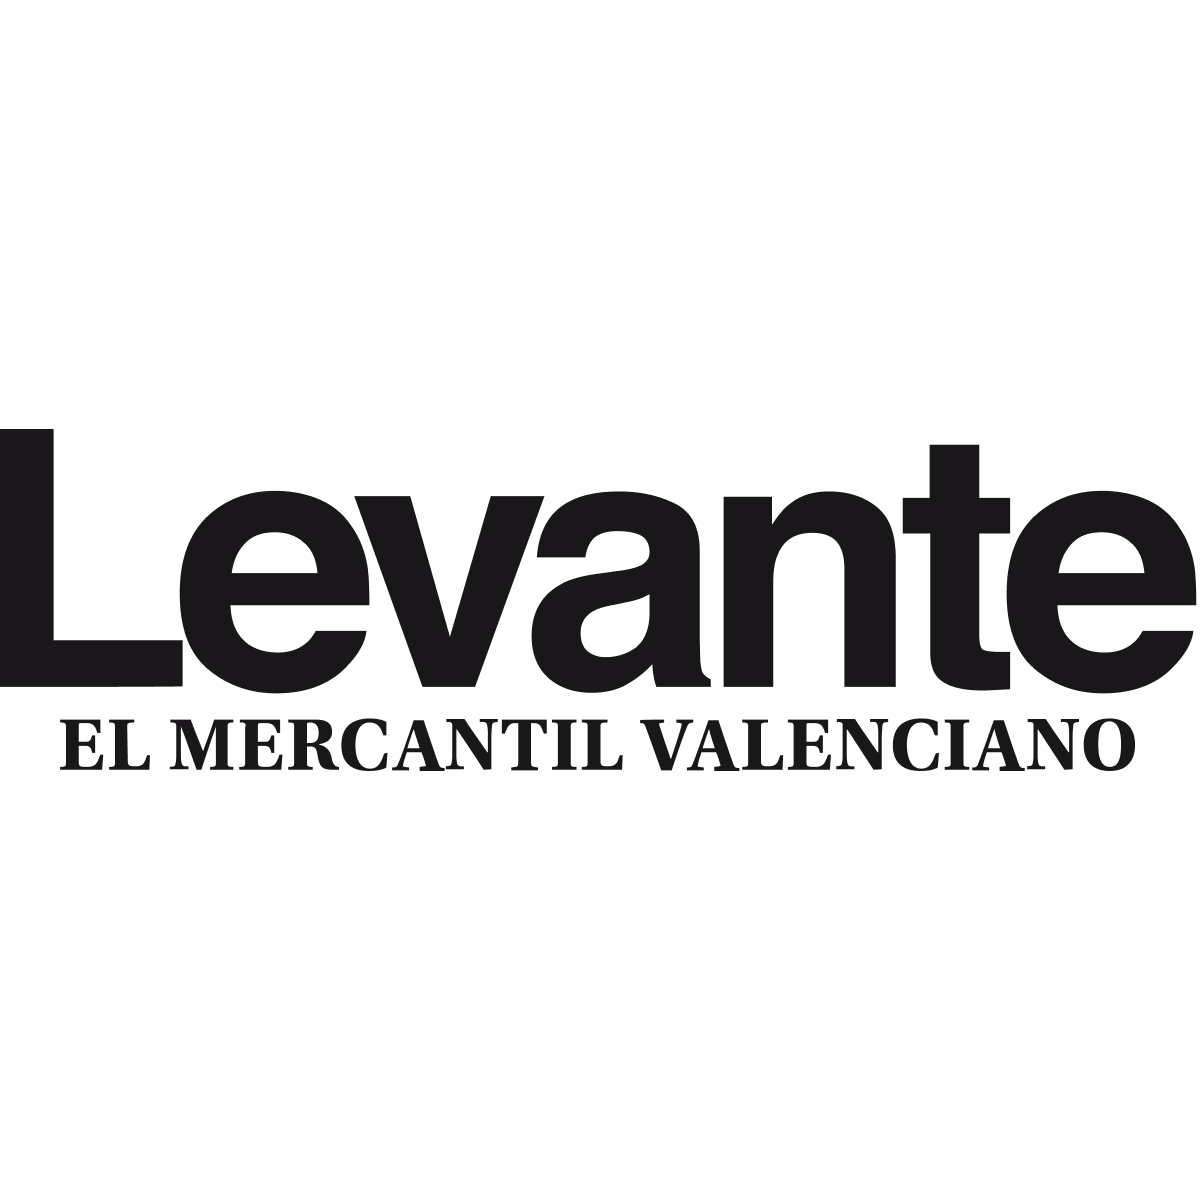 www.levante-emv.com